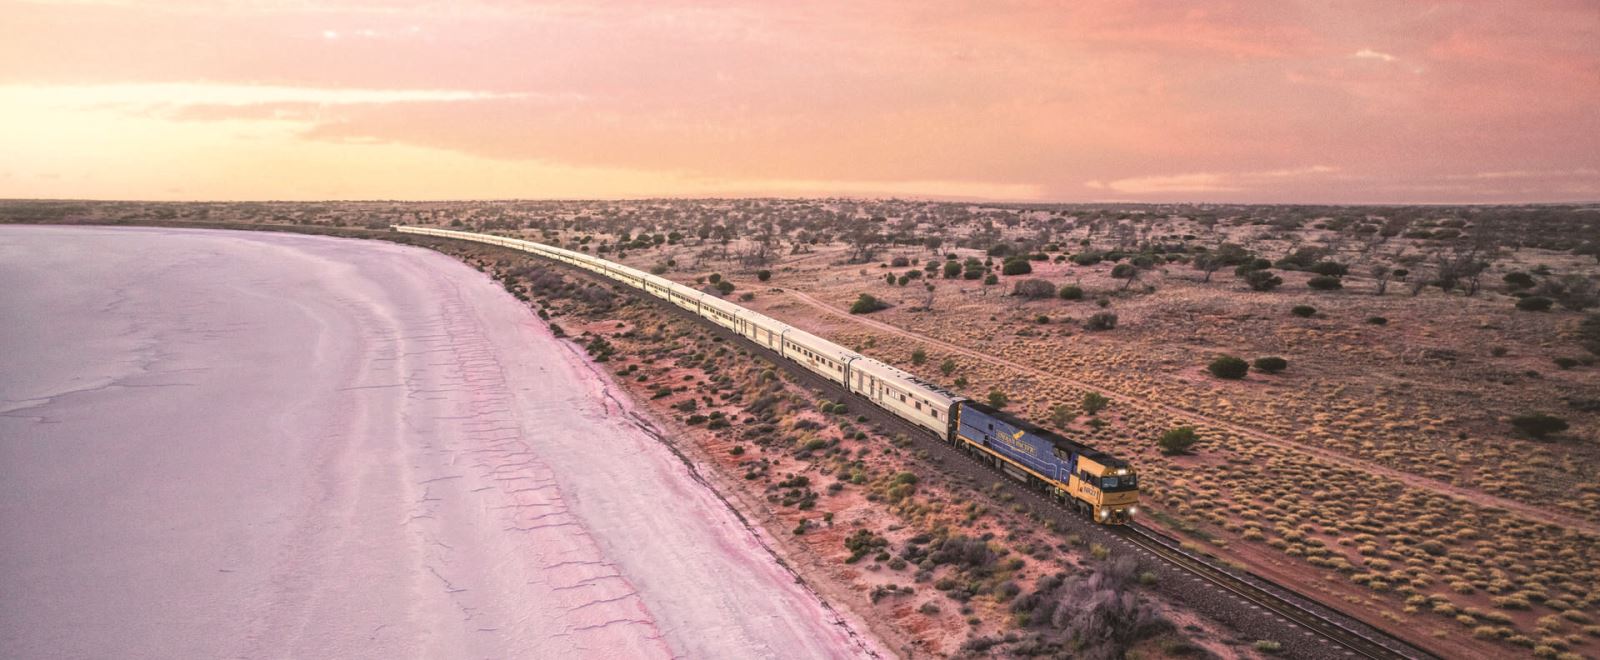 Có gì đặc biệt trên hành trình xe lửa dài 4352 km của Úc - Ảnh 3.